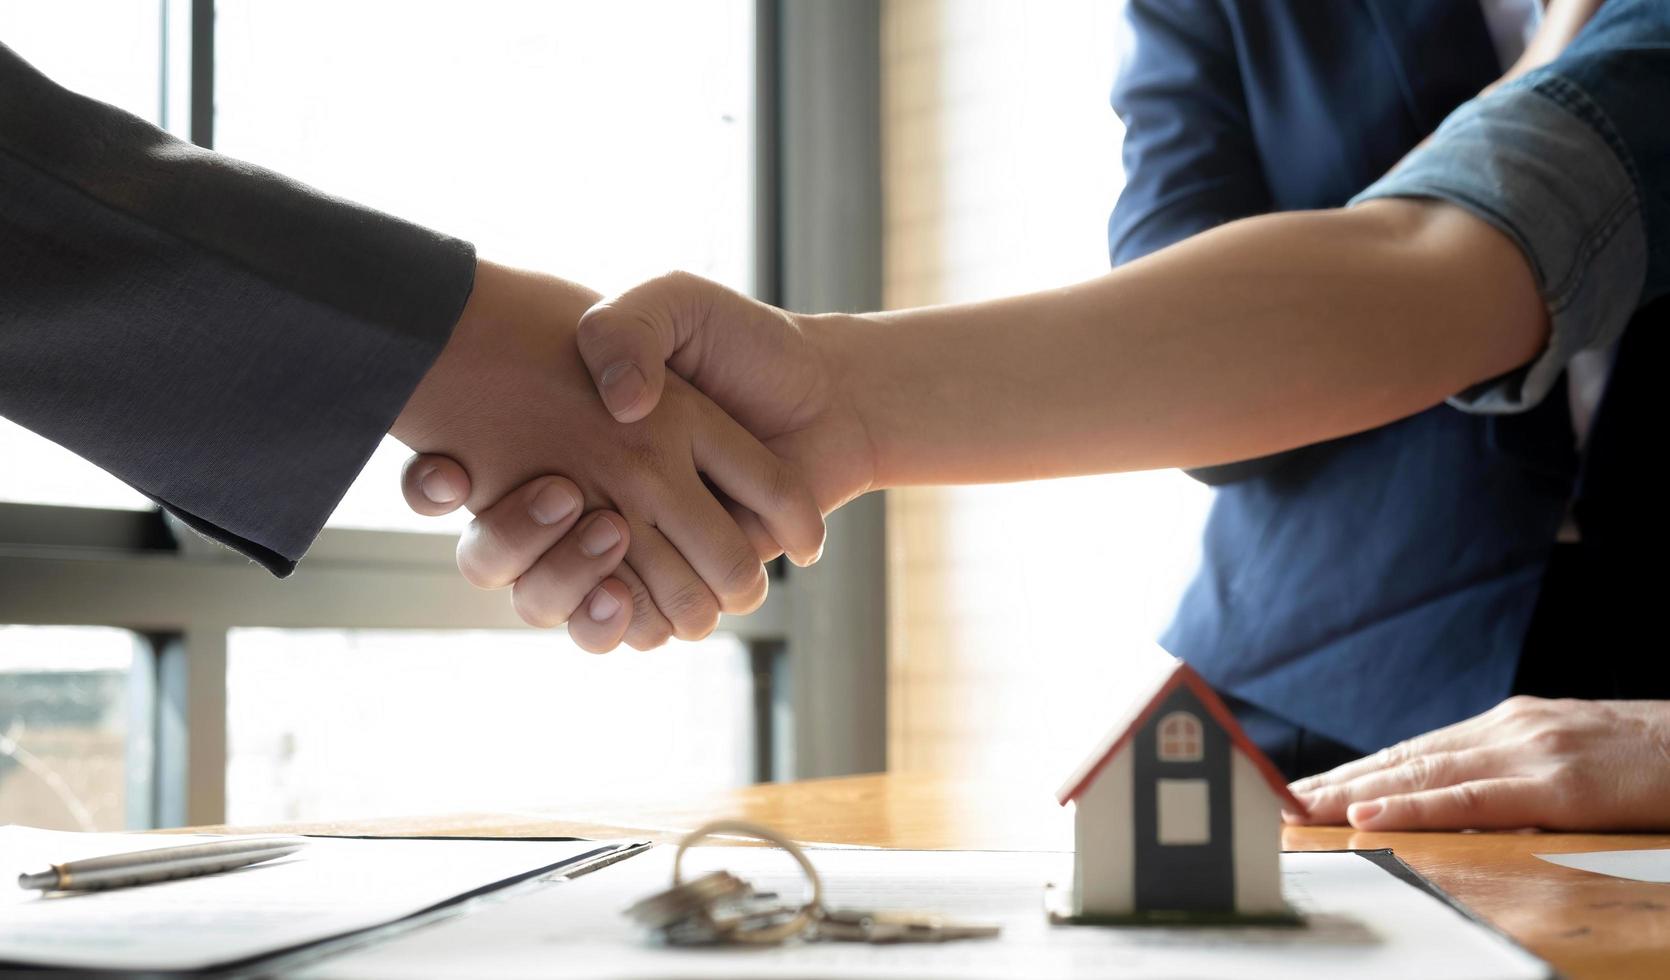 courtier immobilier et client se serrant la main après avoir signé un contrat immobilier, prêt immobilier et concept d'assurance photo